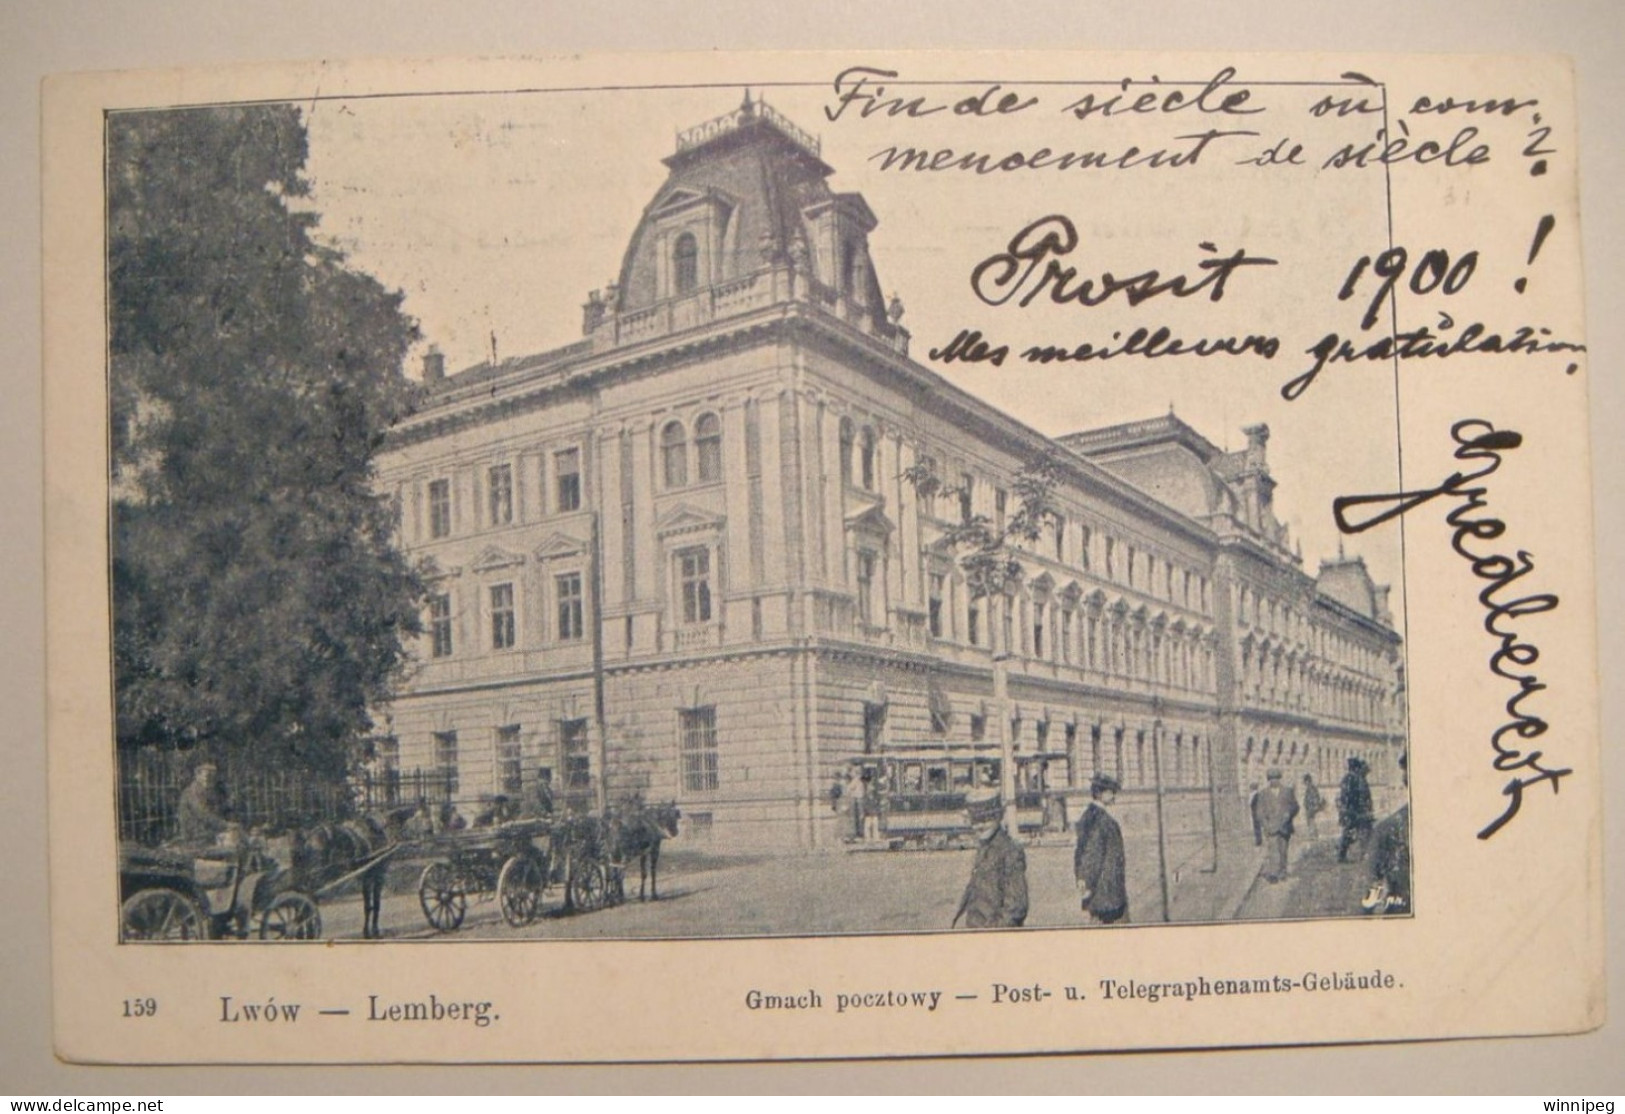 Lwow.Lemberg.Gmach Pocztowy.1900.By L.J.pn.Poland.Ukraine - Ukraine